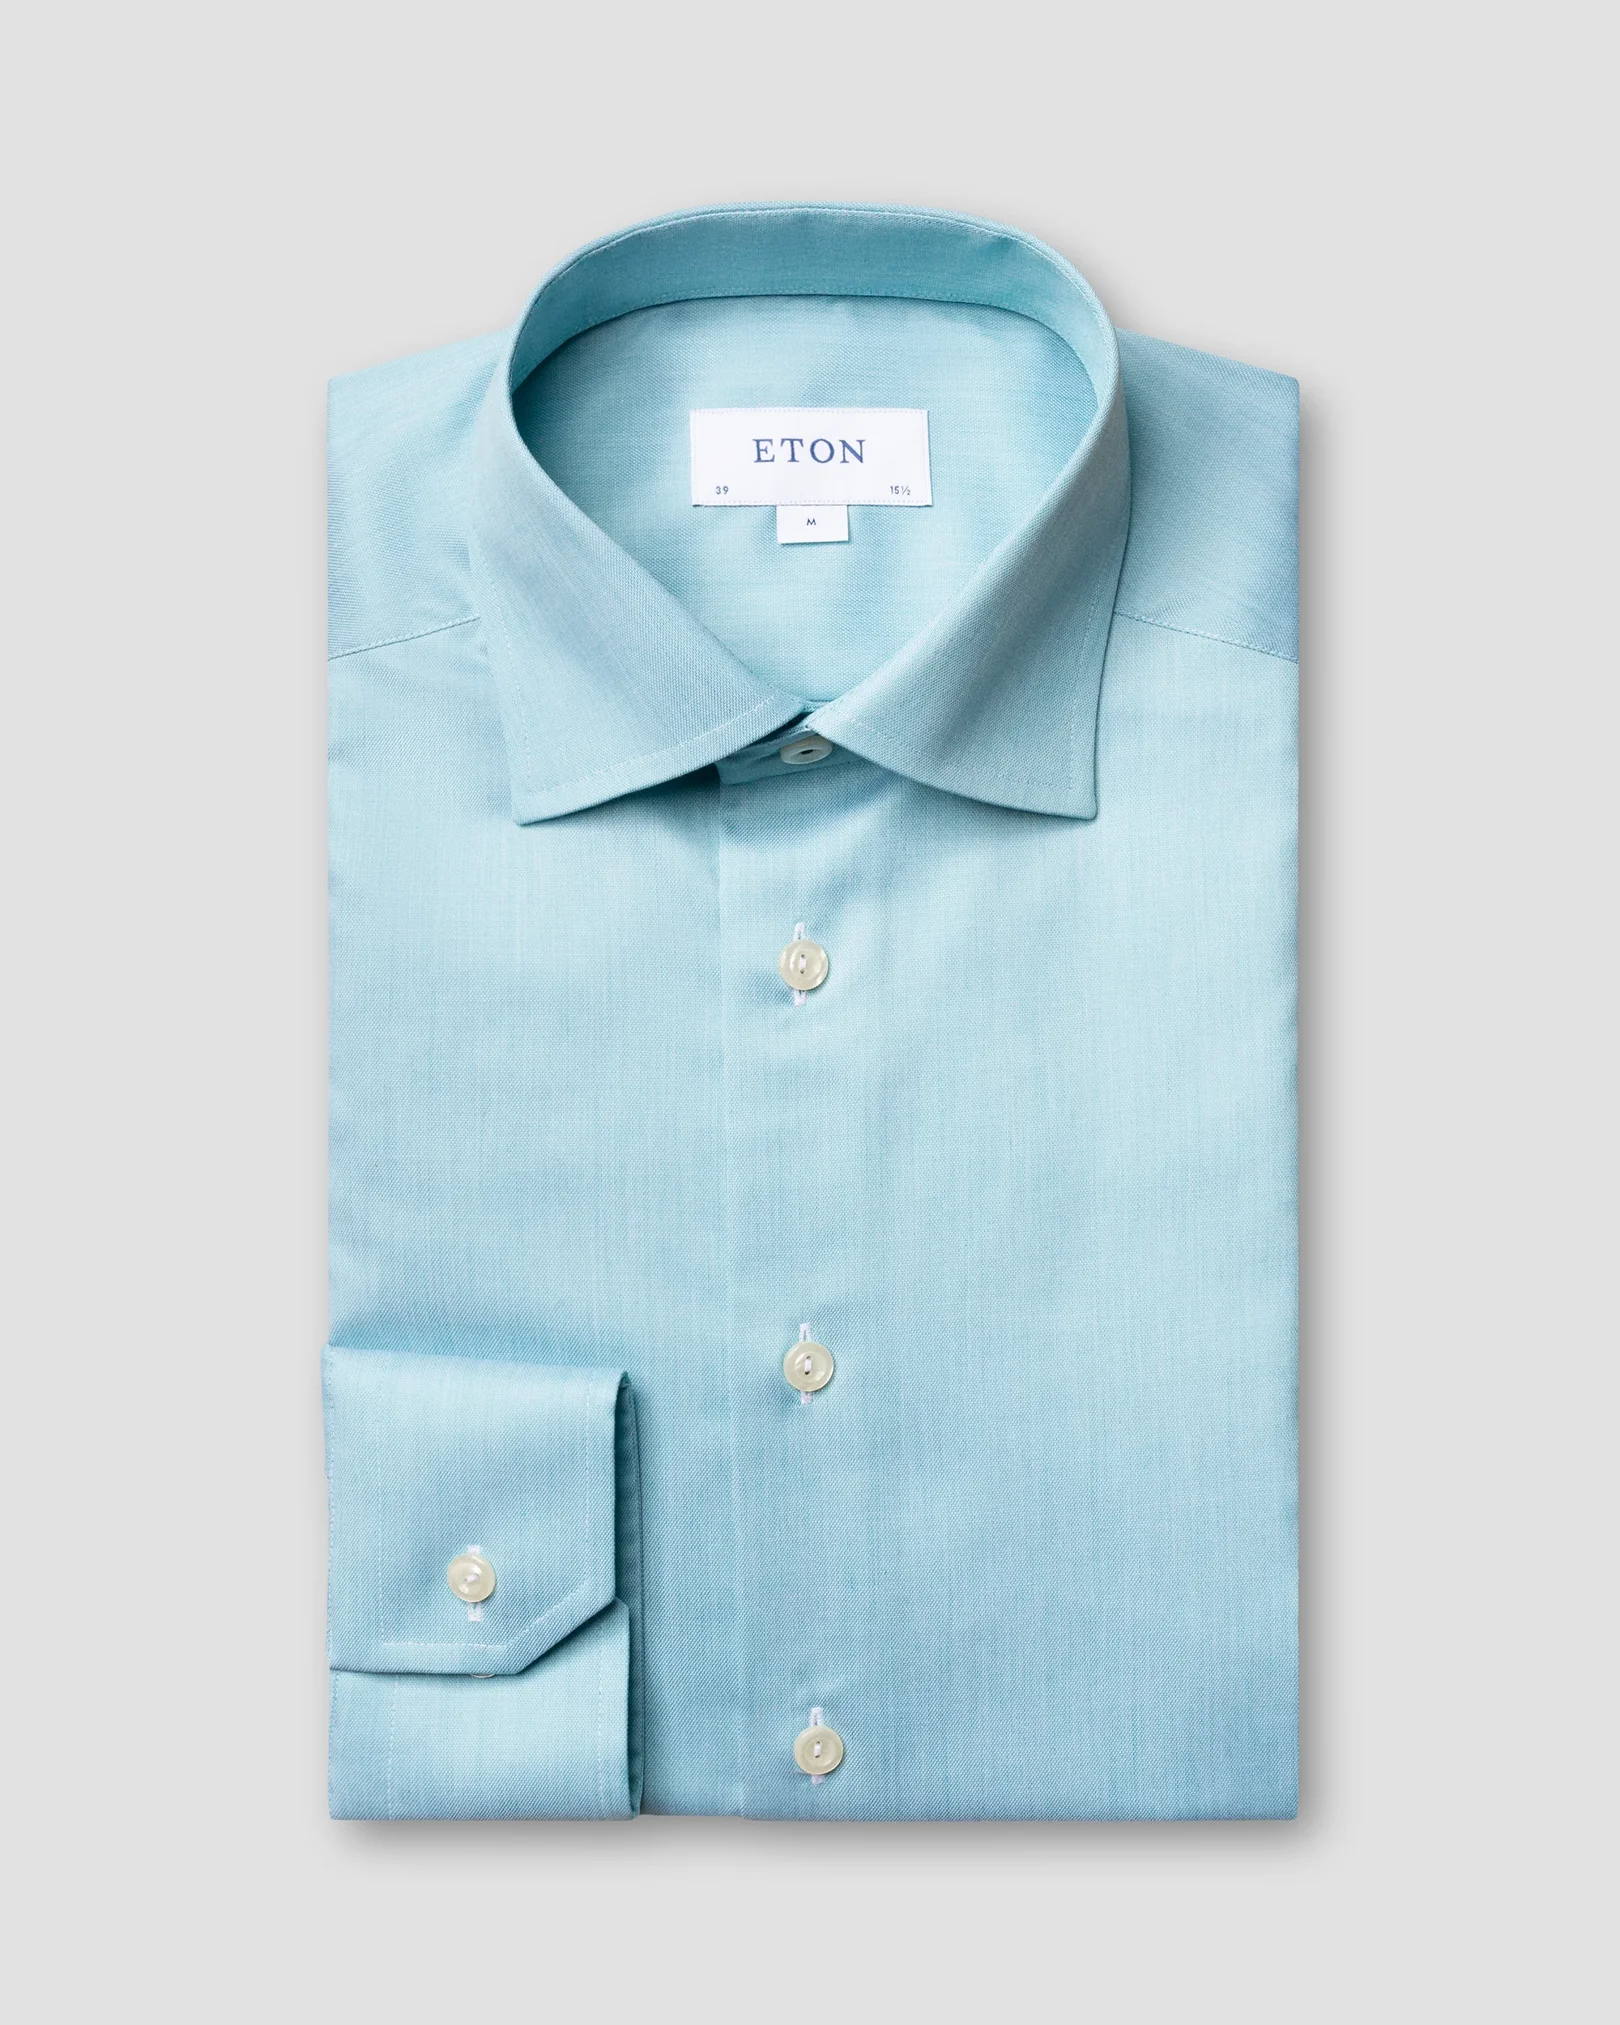 Eton - turquoise twill shirt navy piping